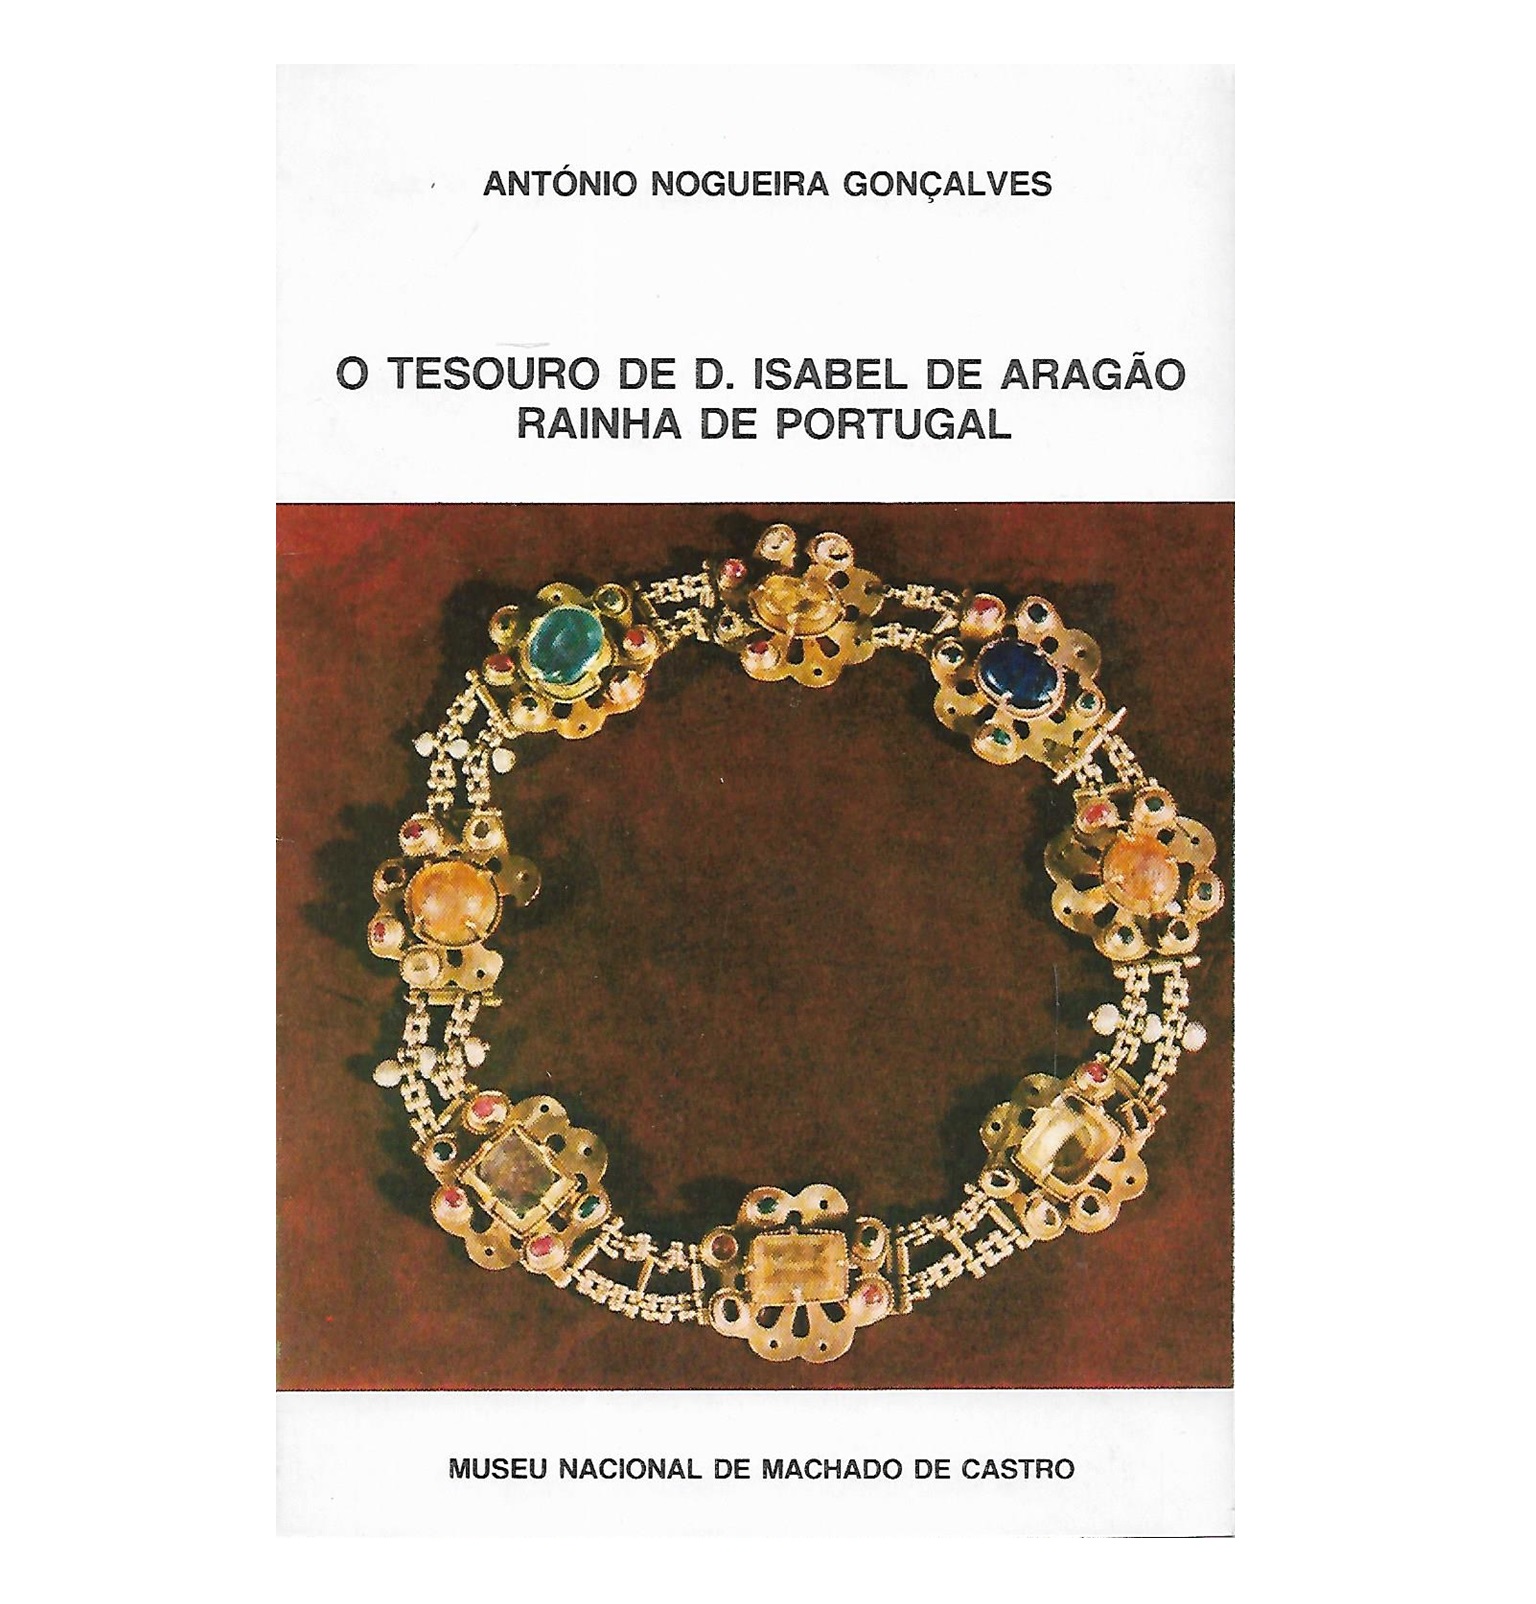 O TESOURO DE D. ISABEL DE ARAGÃO, RAINHA DE PORTUGAL